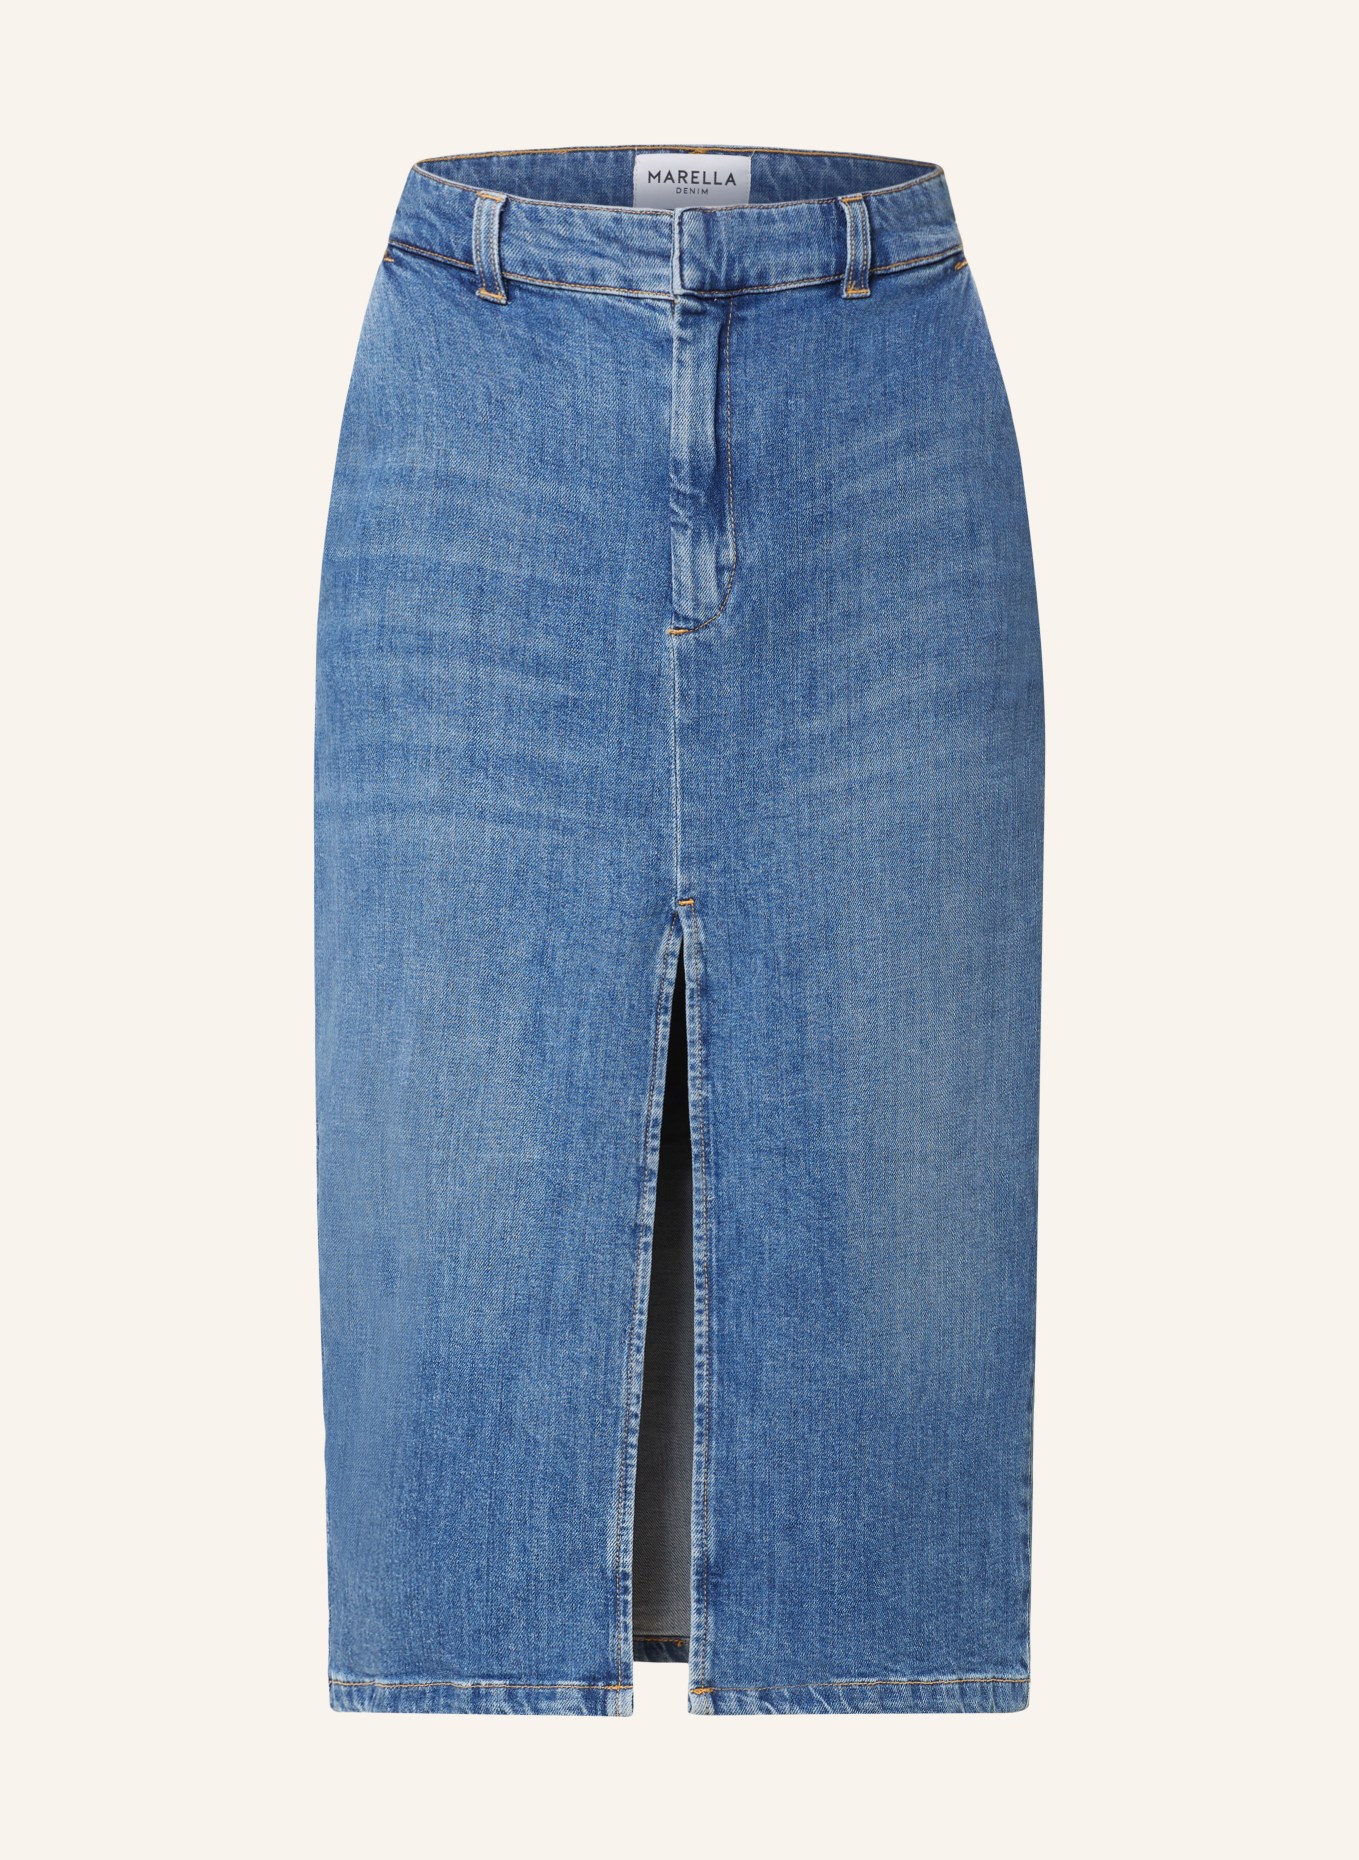 MARELLA Denim skirt, Color: 001 Blue Jeans Dark (Image 1)